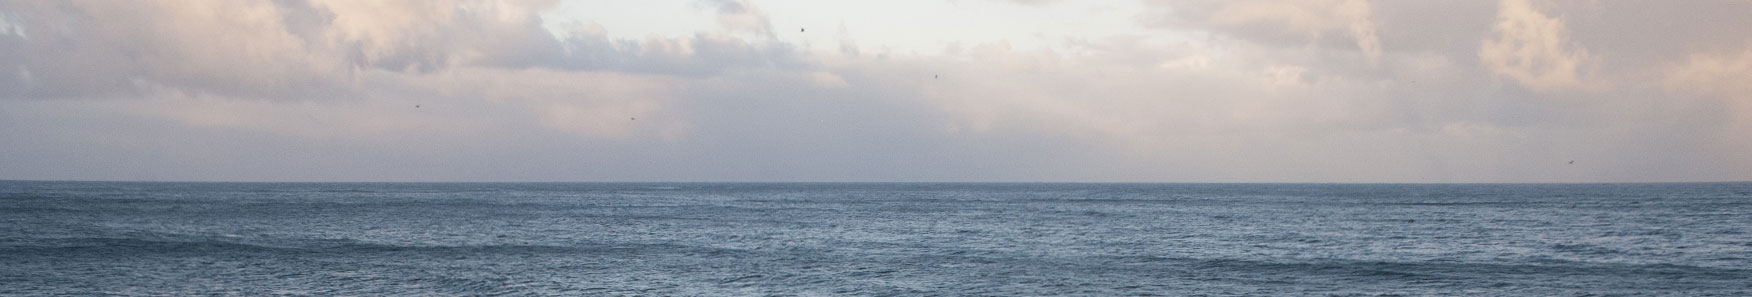 The WaveEL buoy in the ocean